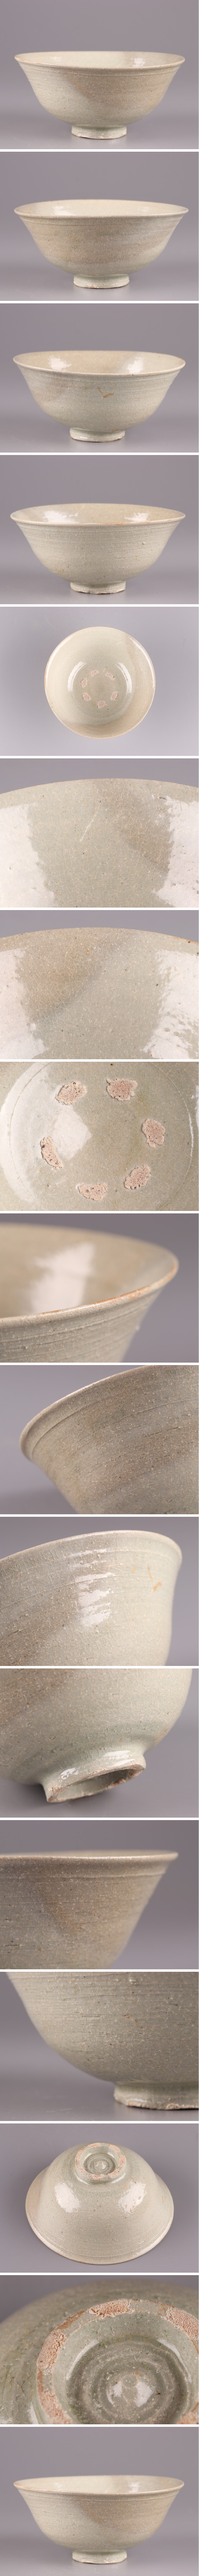 通販格安古美術 朝鮮古陶磁器 李朝 茶碗 時代物 極上品 初だし品 3389 李朝